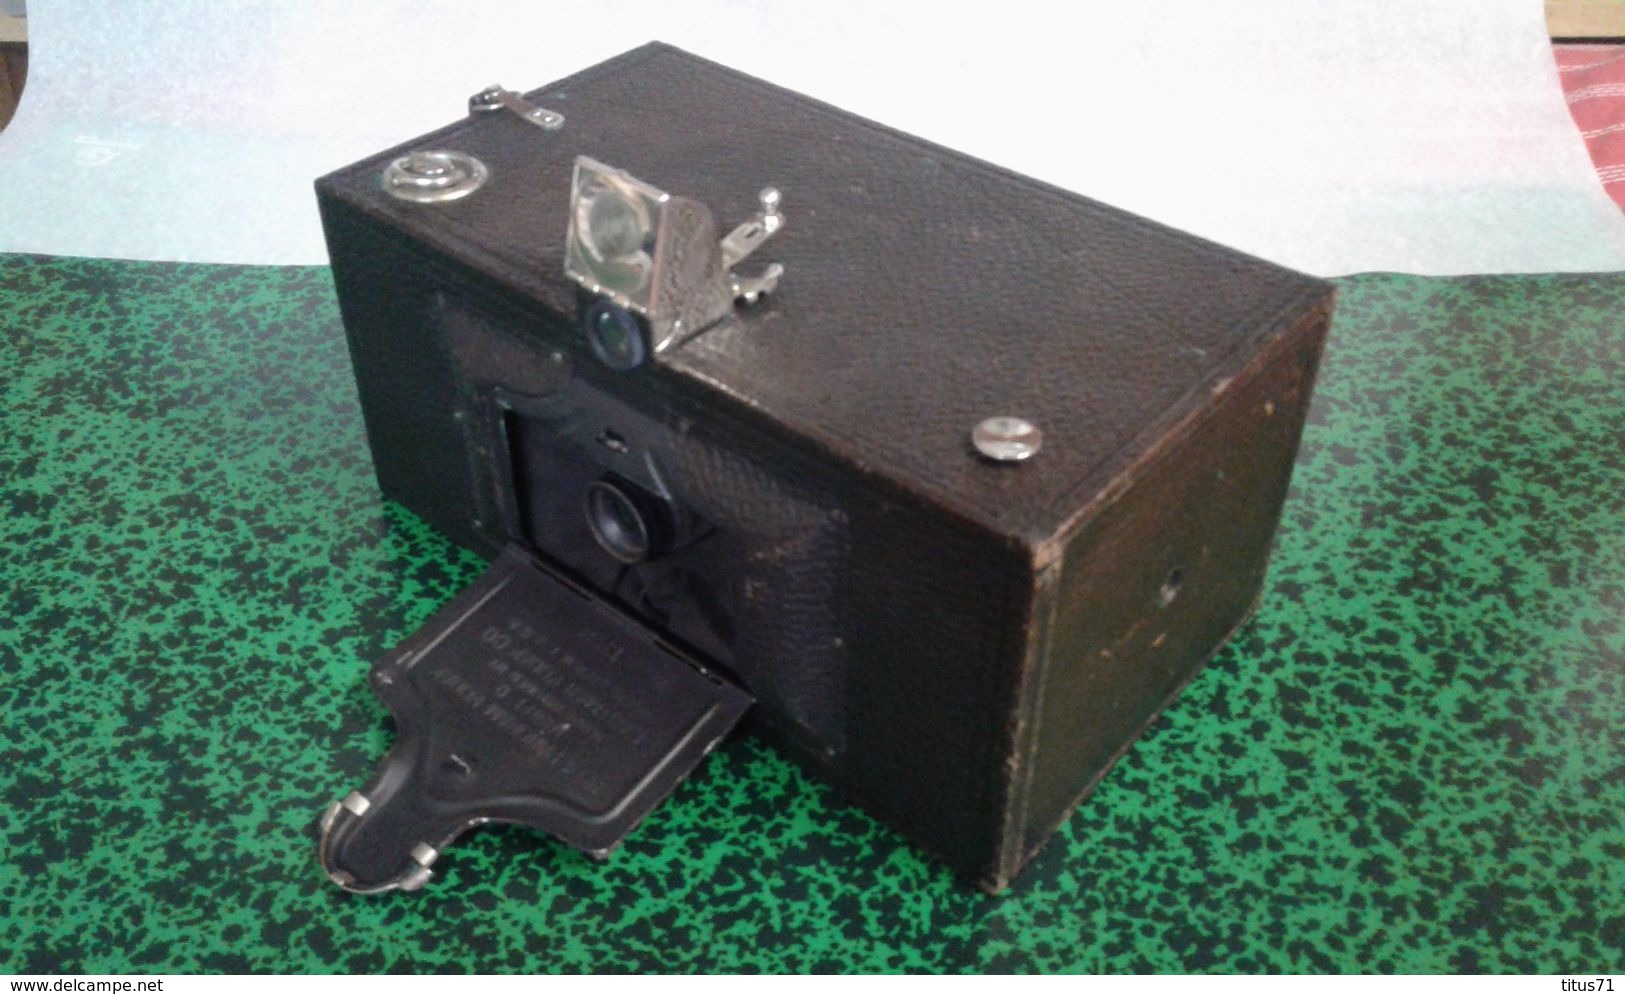 Appareil Photo Kodak Panoram 4 D Avec Sacoche D'origine Et Notice - 1910 - Envoi En France Seulement En Valeur Déclarée - Appareils Photo